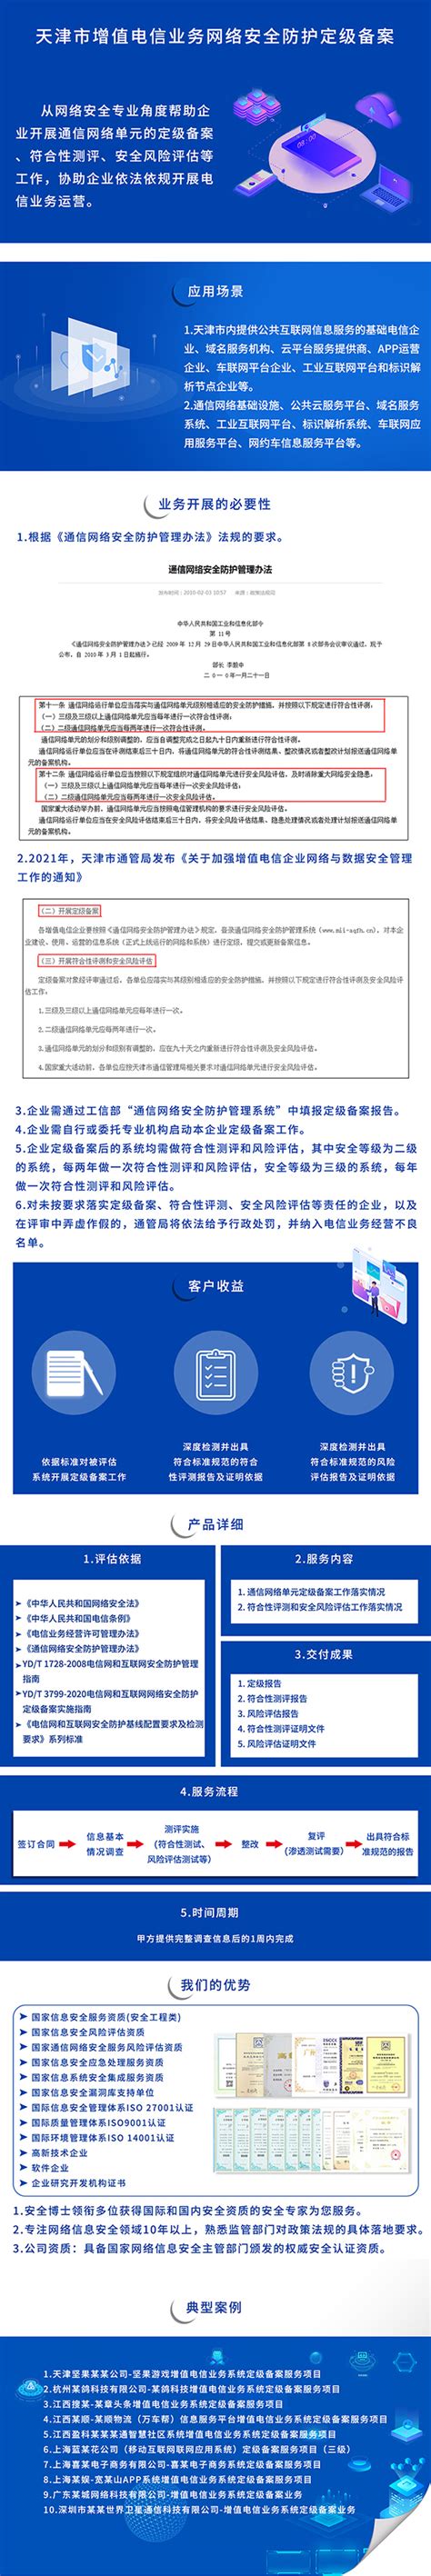 天津市增值电信业务网络安全防护定级备案